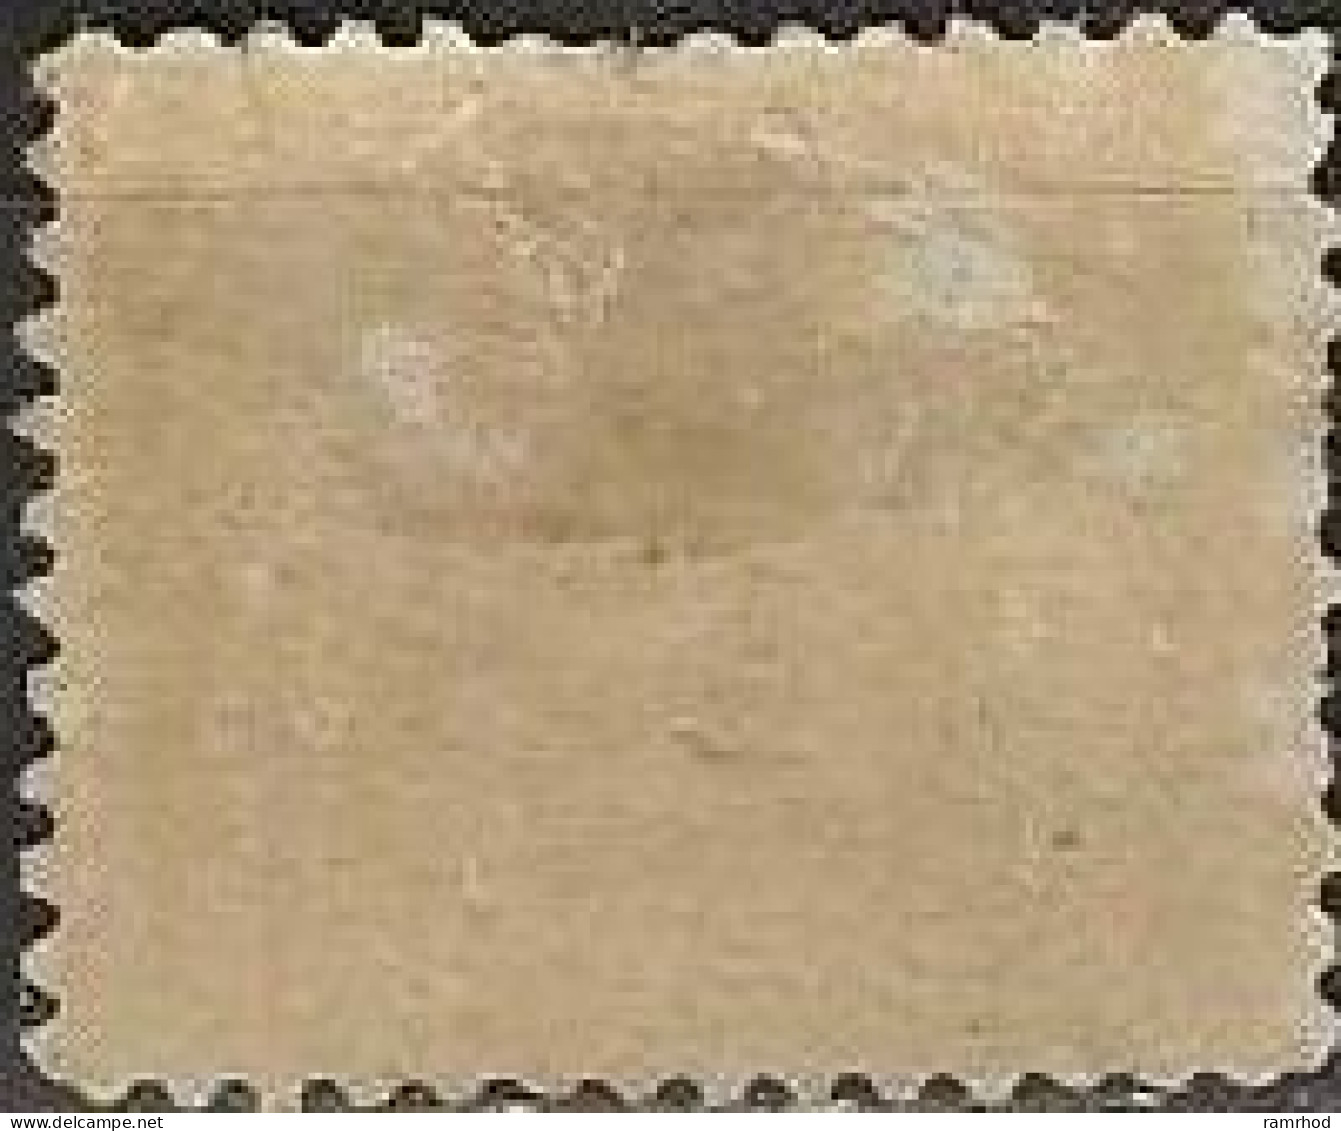 CANADA 1906 Postage Due Stamp - 2c. - Violet MH - Segnatasse